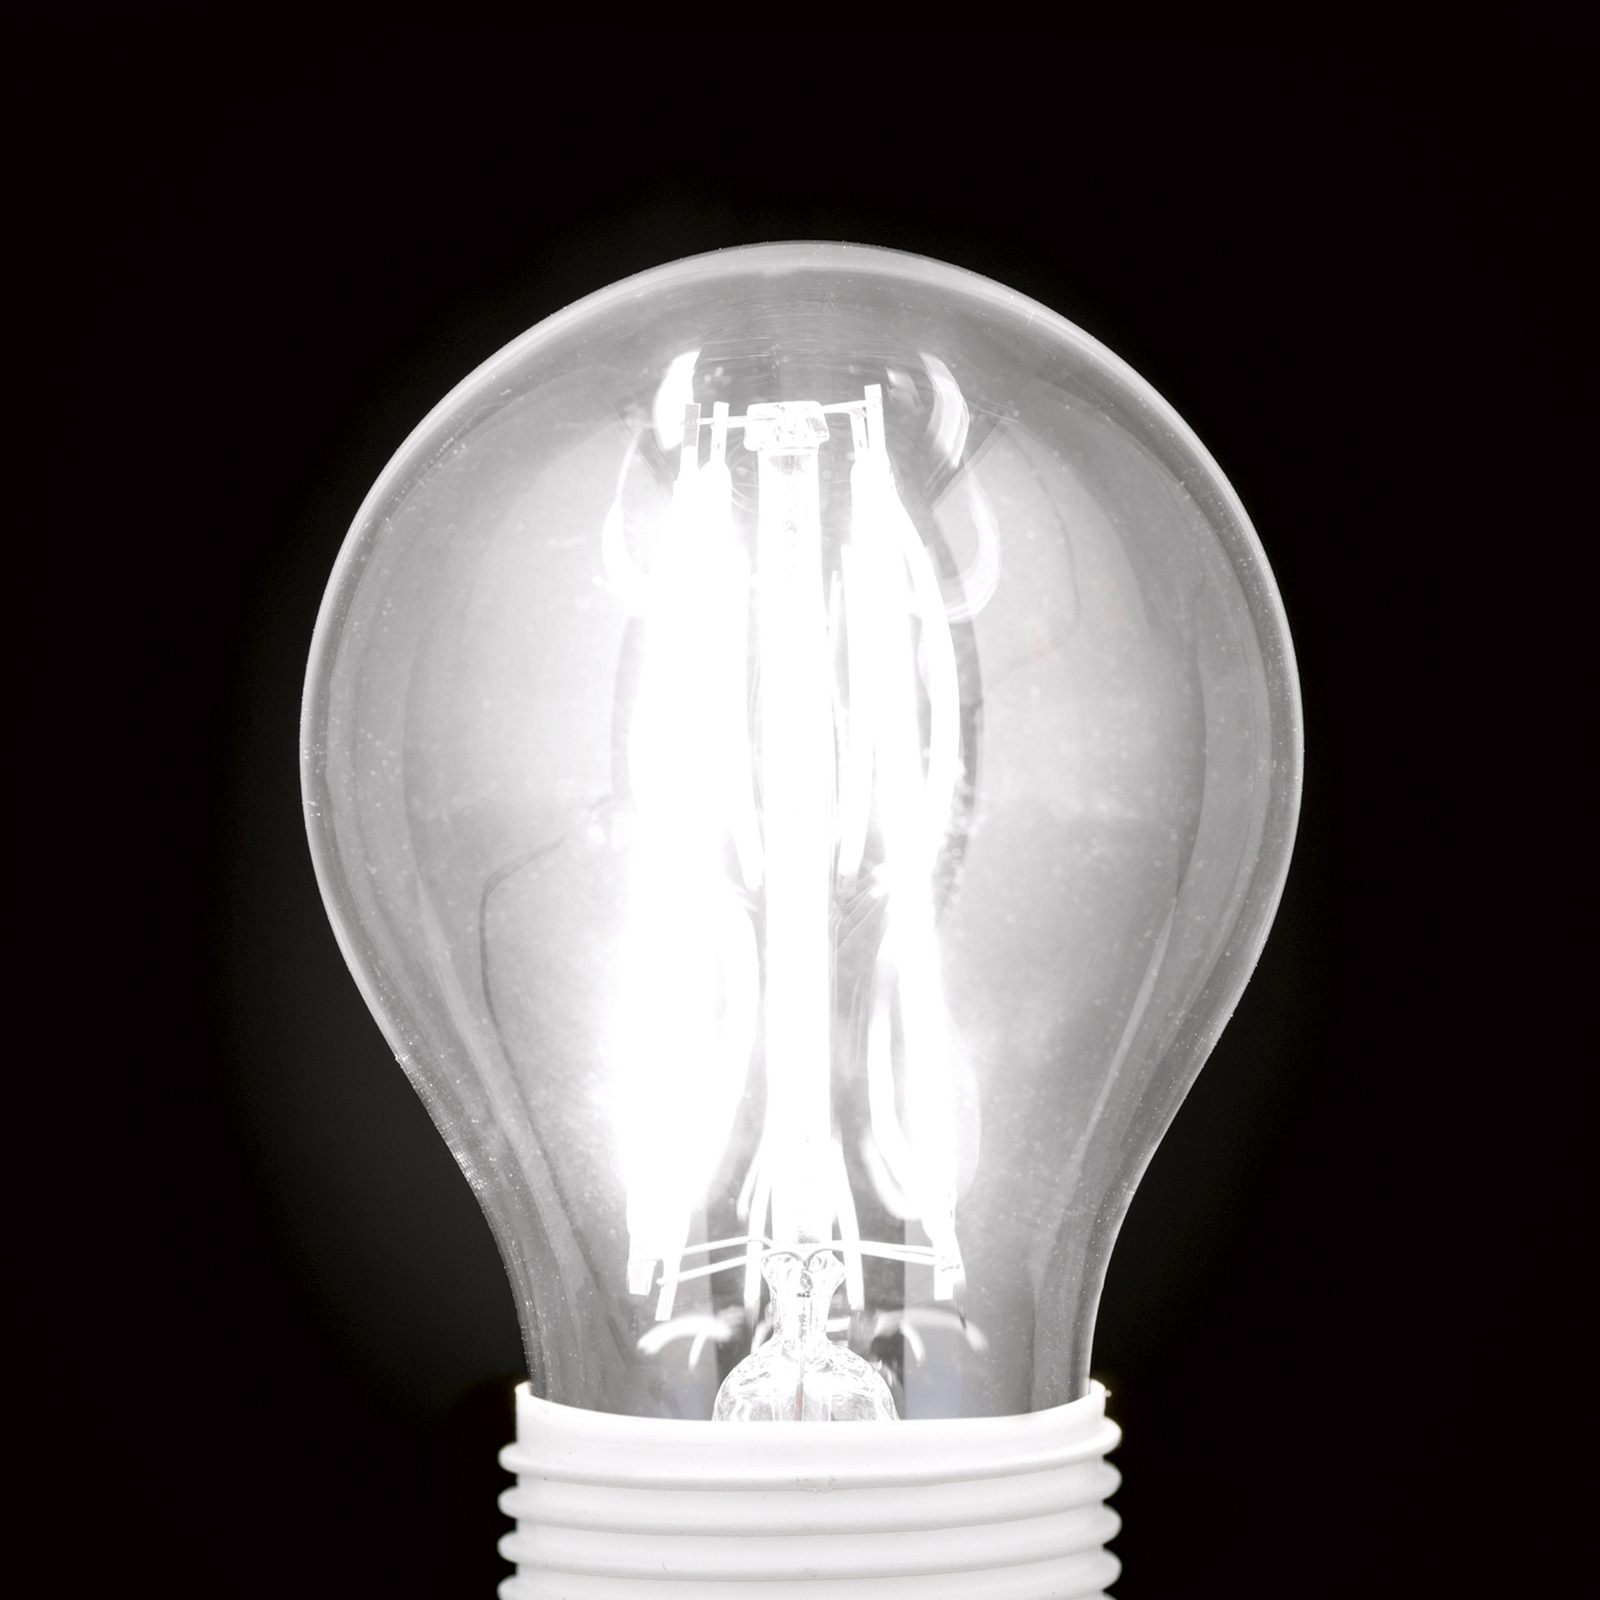 LED žárovka-kapka E14 5W filament 827 stmívatelná